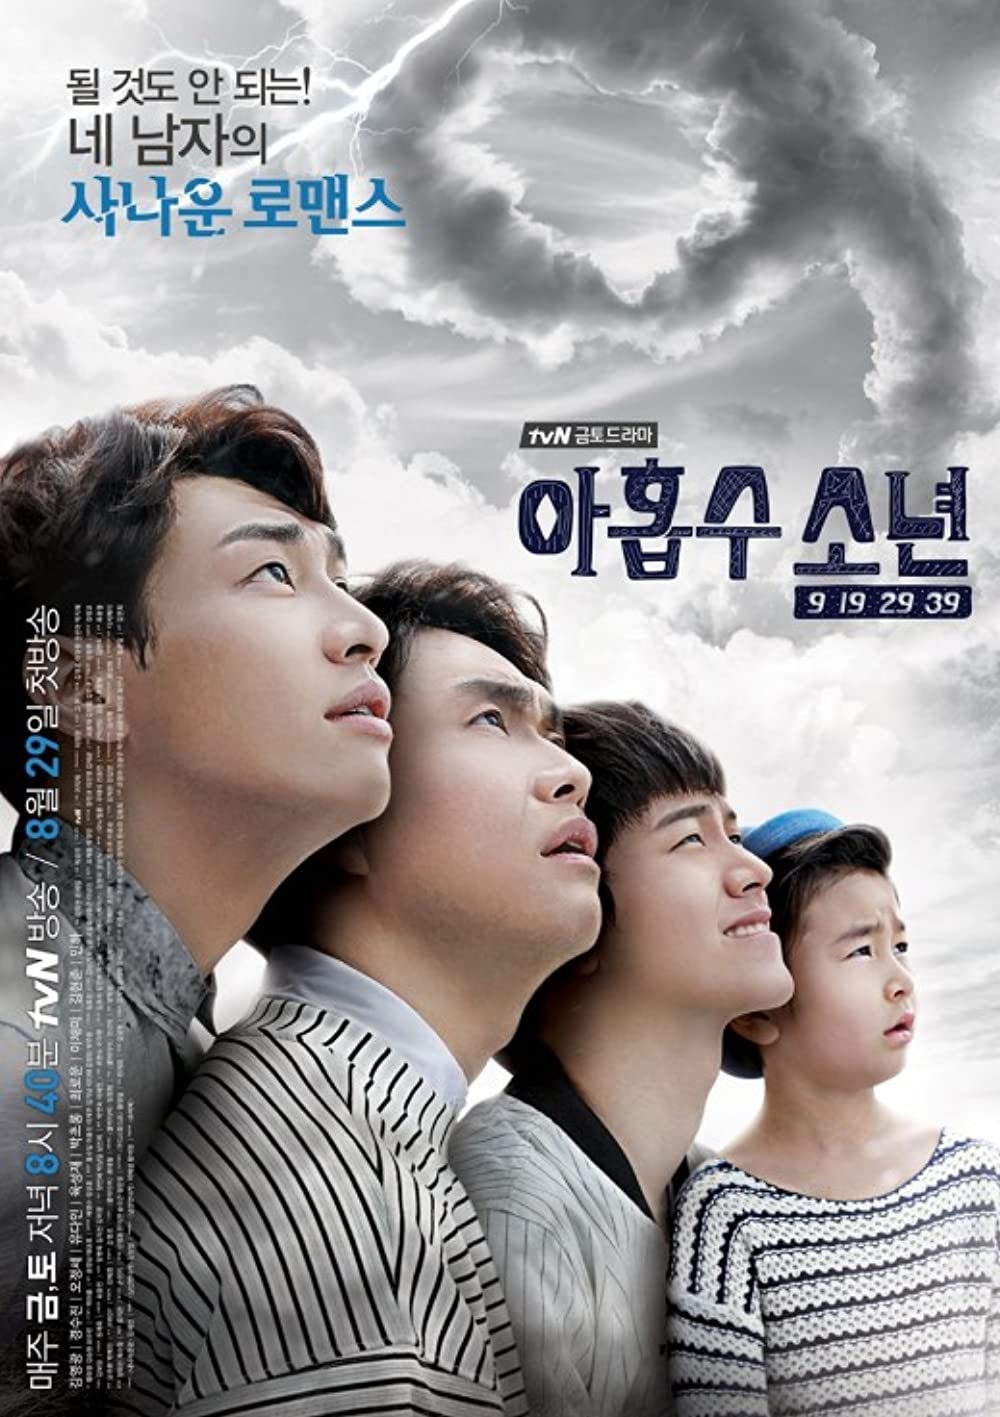 7 Rekomendasi drama Korea kisahkan kutukan, banyak dosa turunan